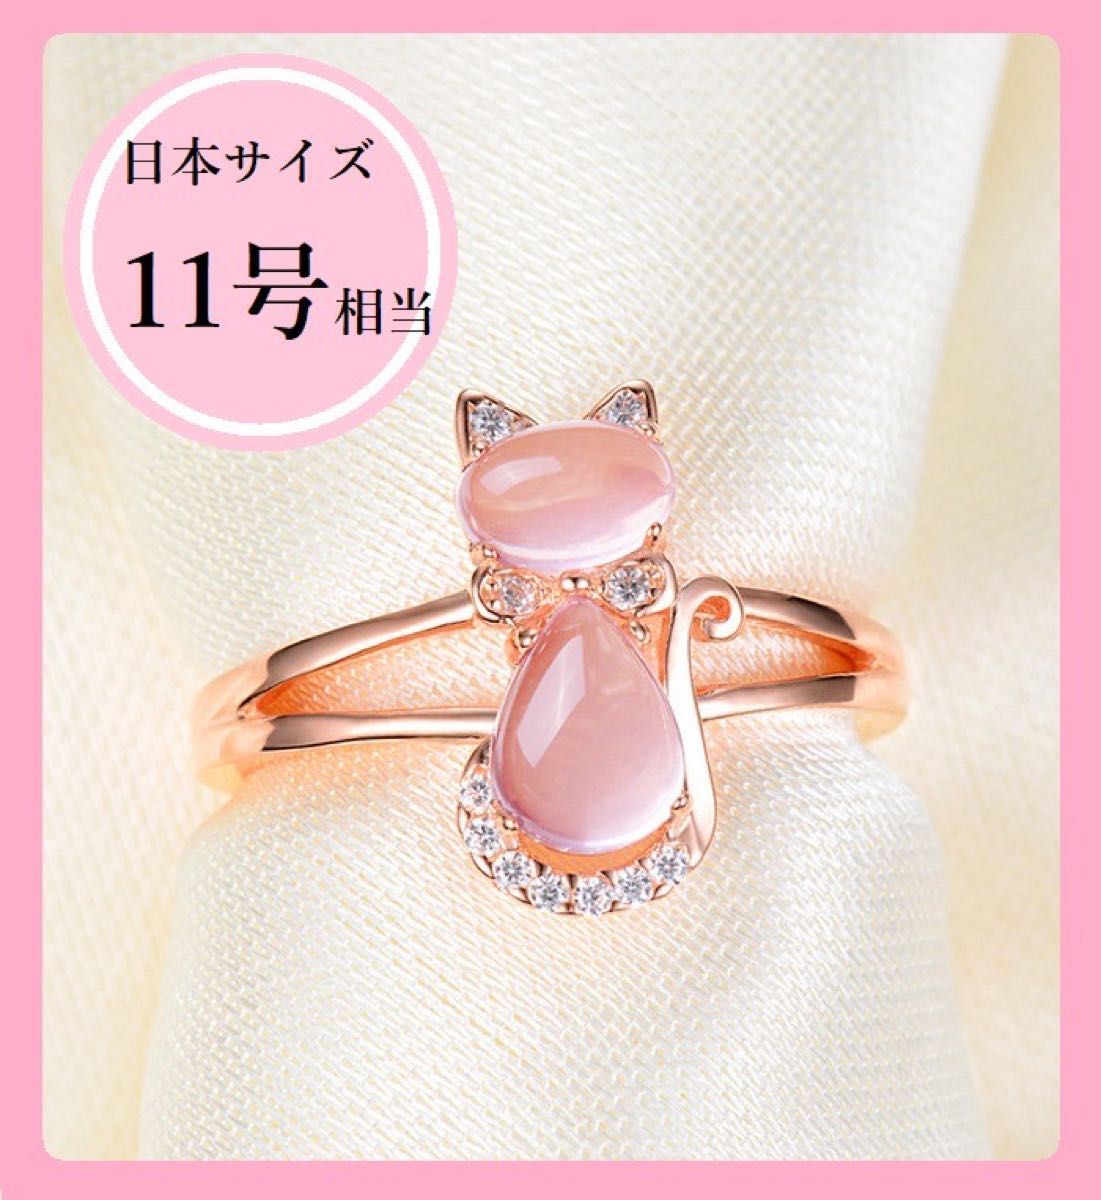 上等な US6号 日本サイズ11号 猫 ネコ 指輪 リング ピンク プレゼント